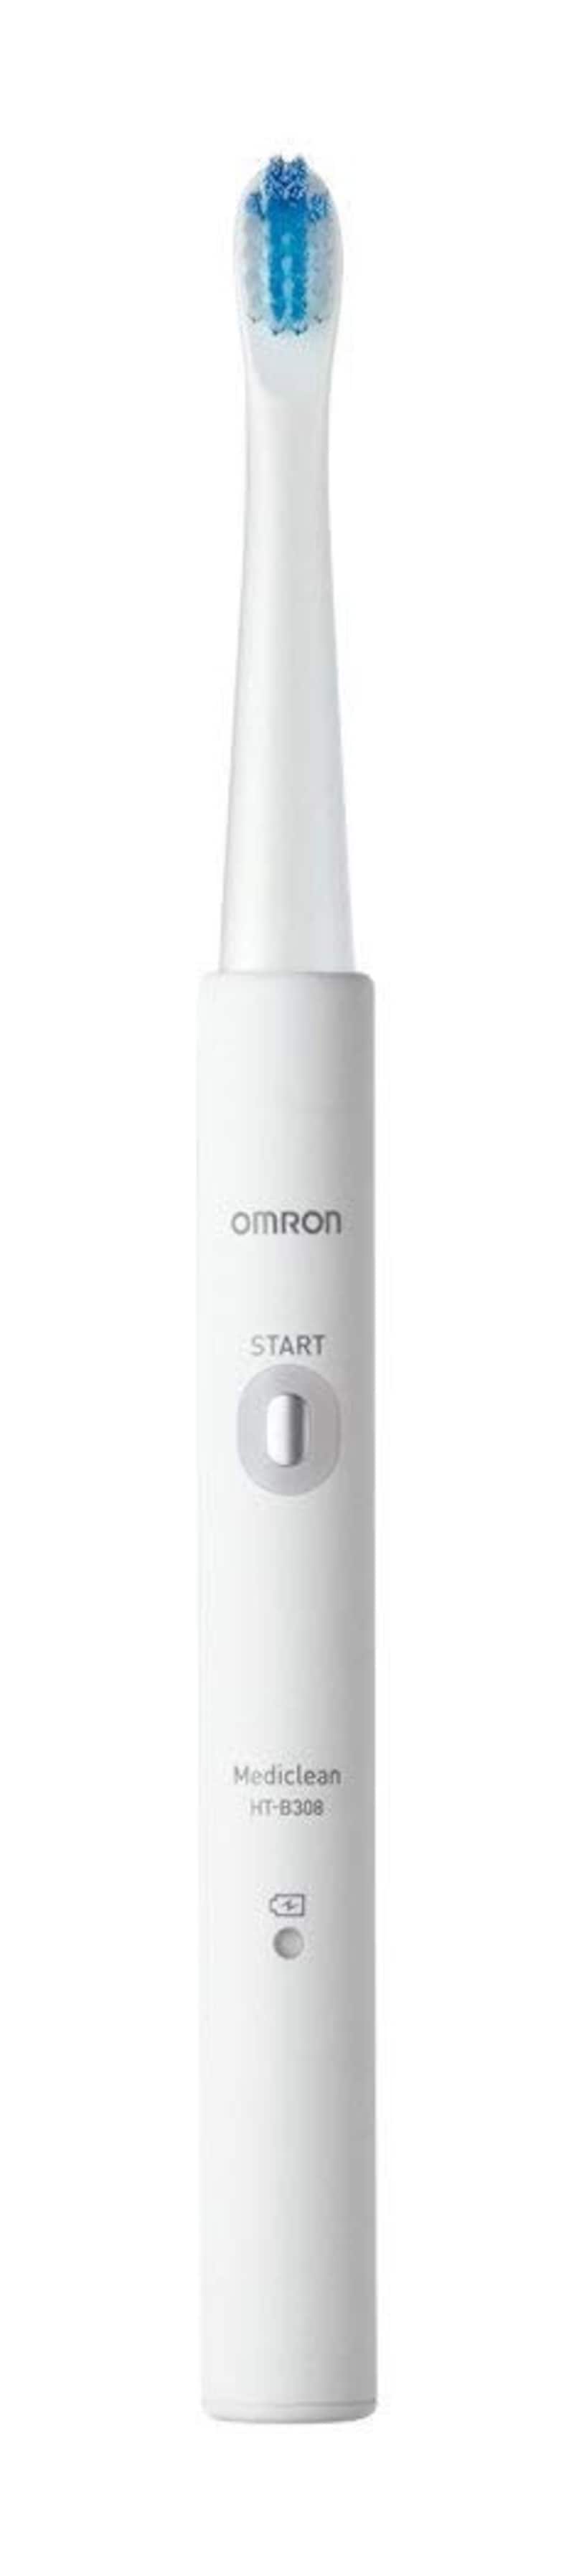 オムロン,電動歯ブラシ メディクリーン,HT-B308-W